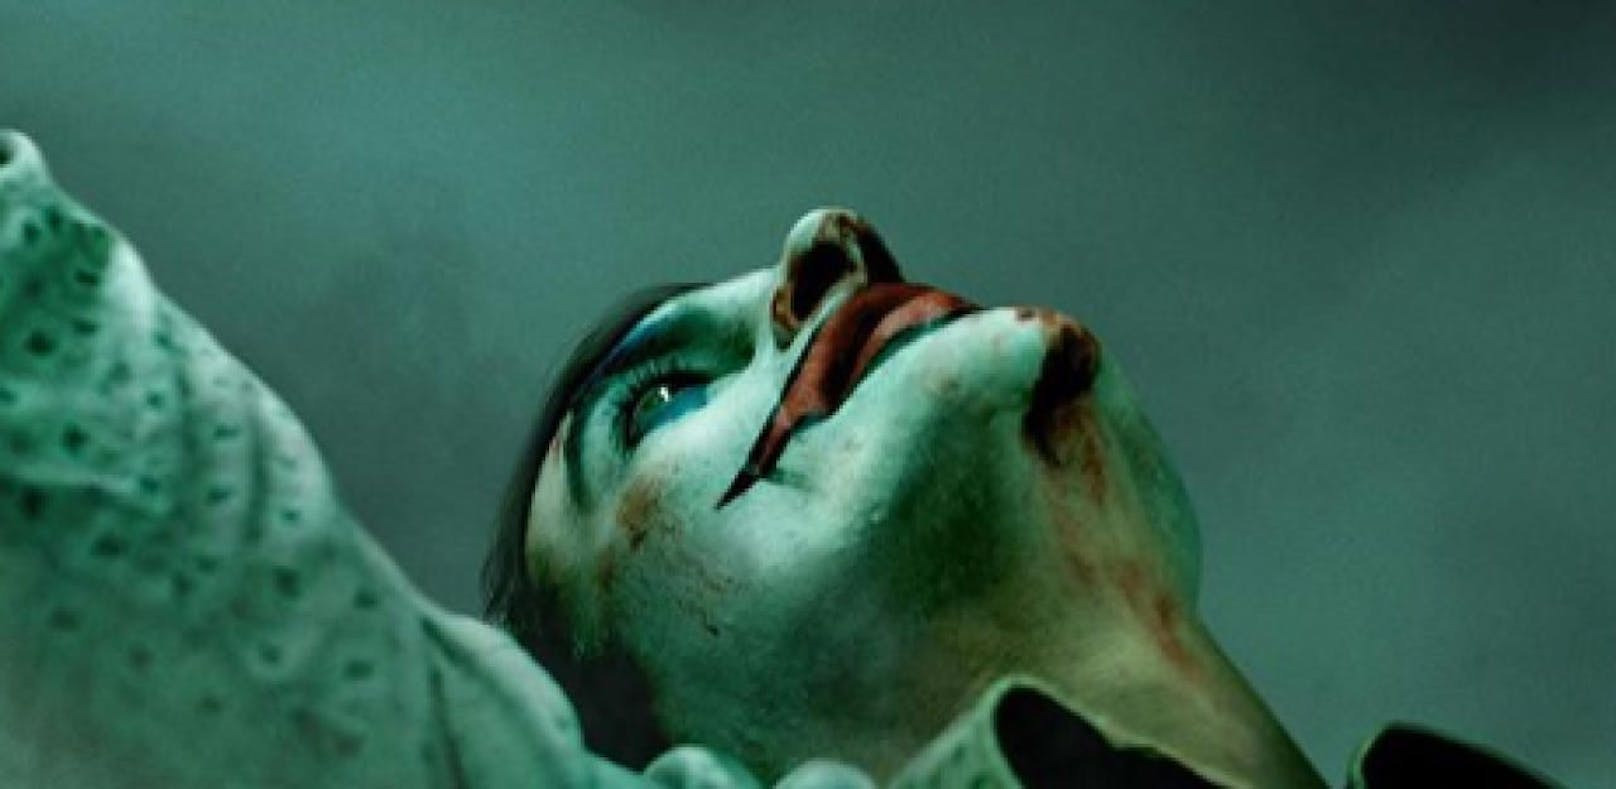 Das erste Poster zum neuen Joker-Film ist da!